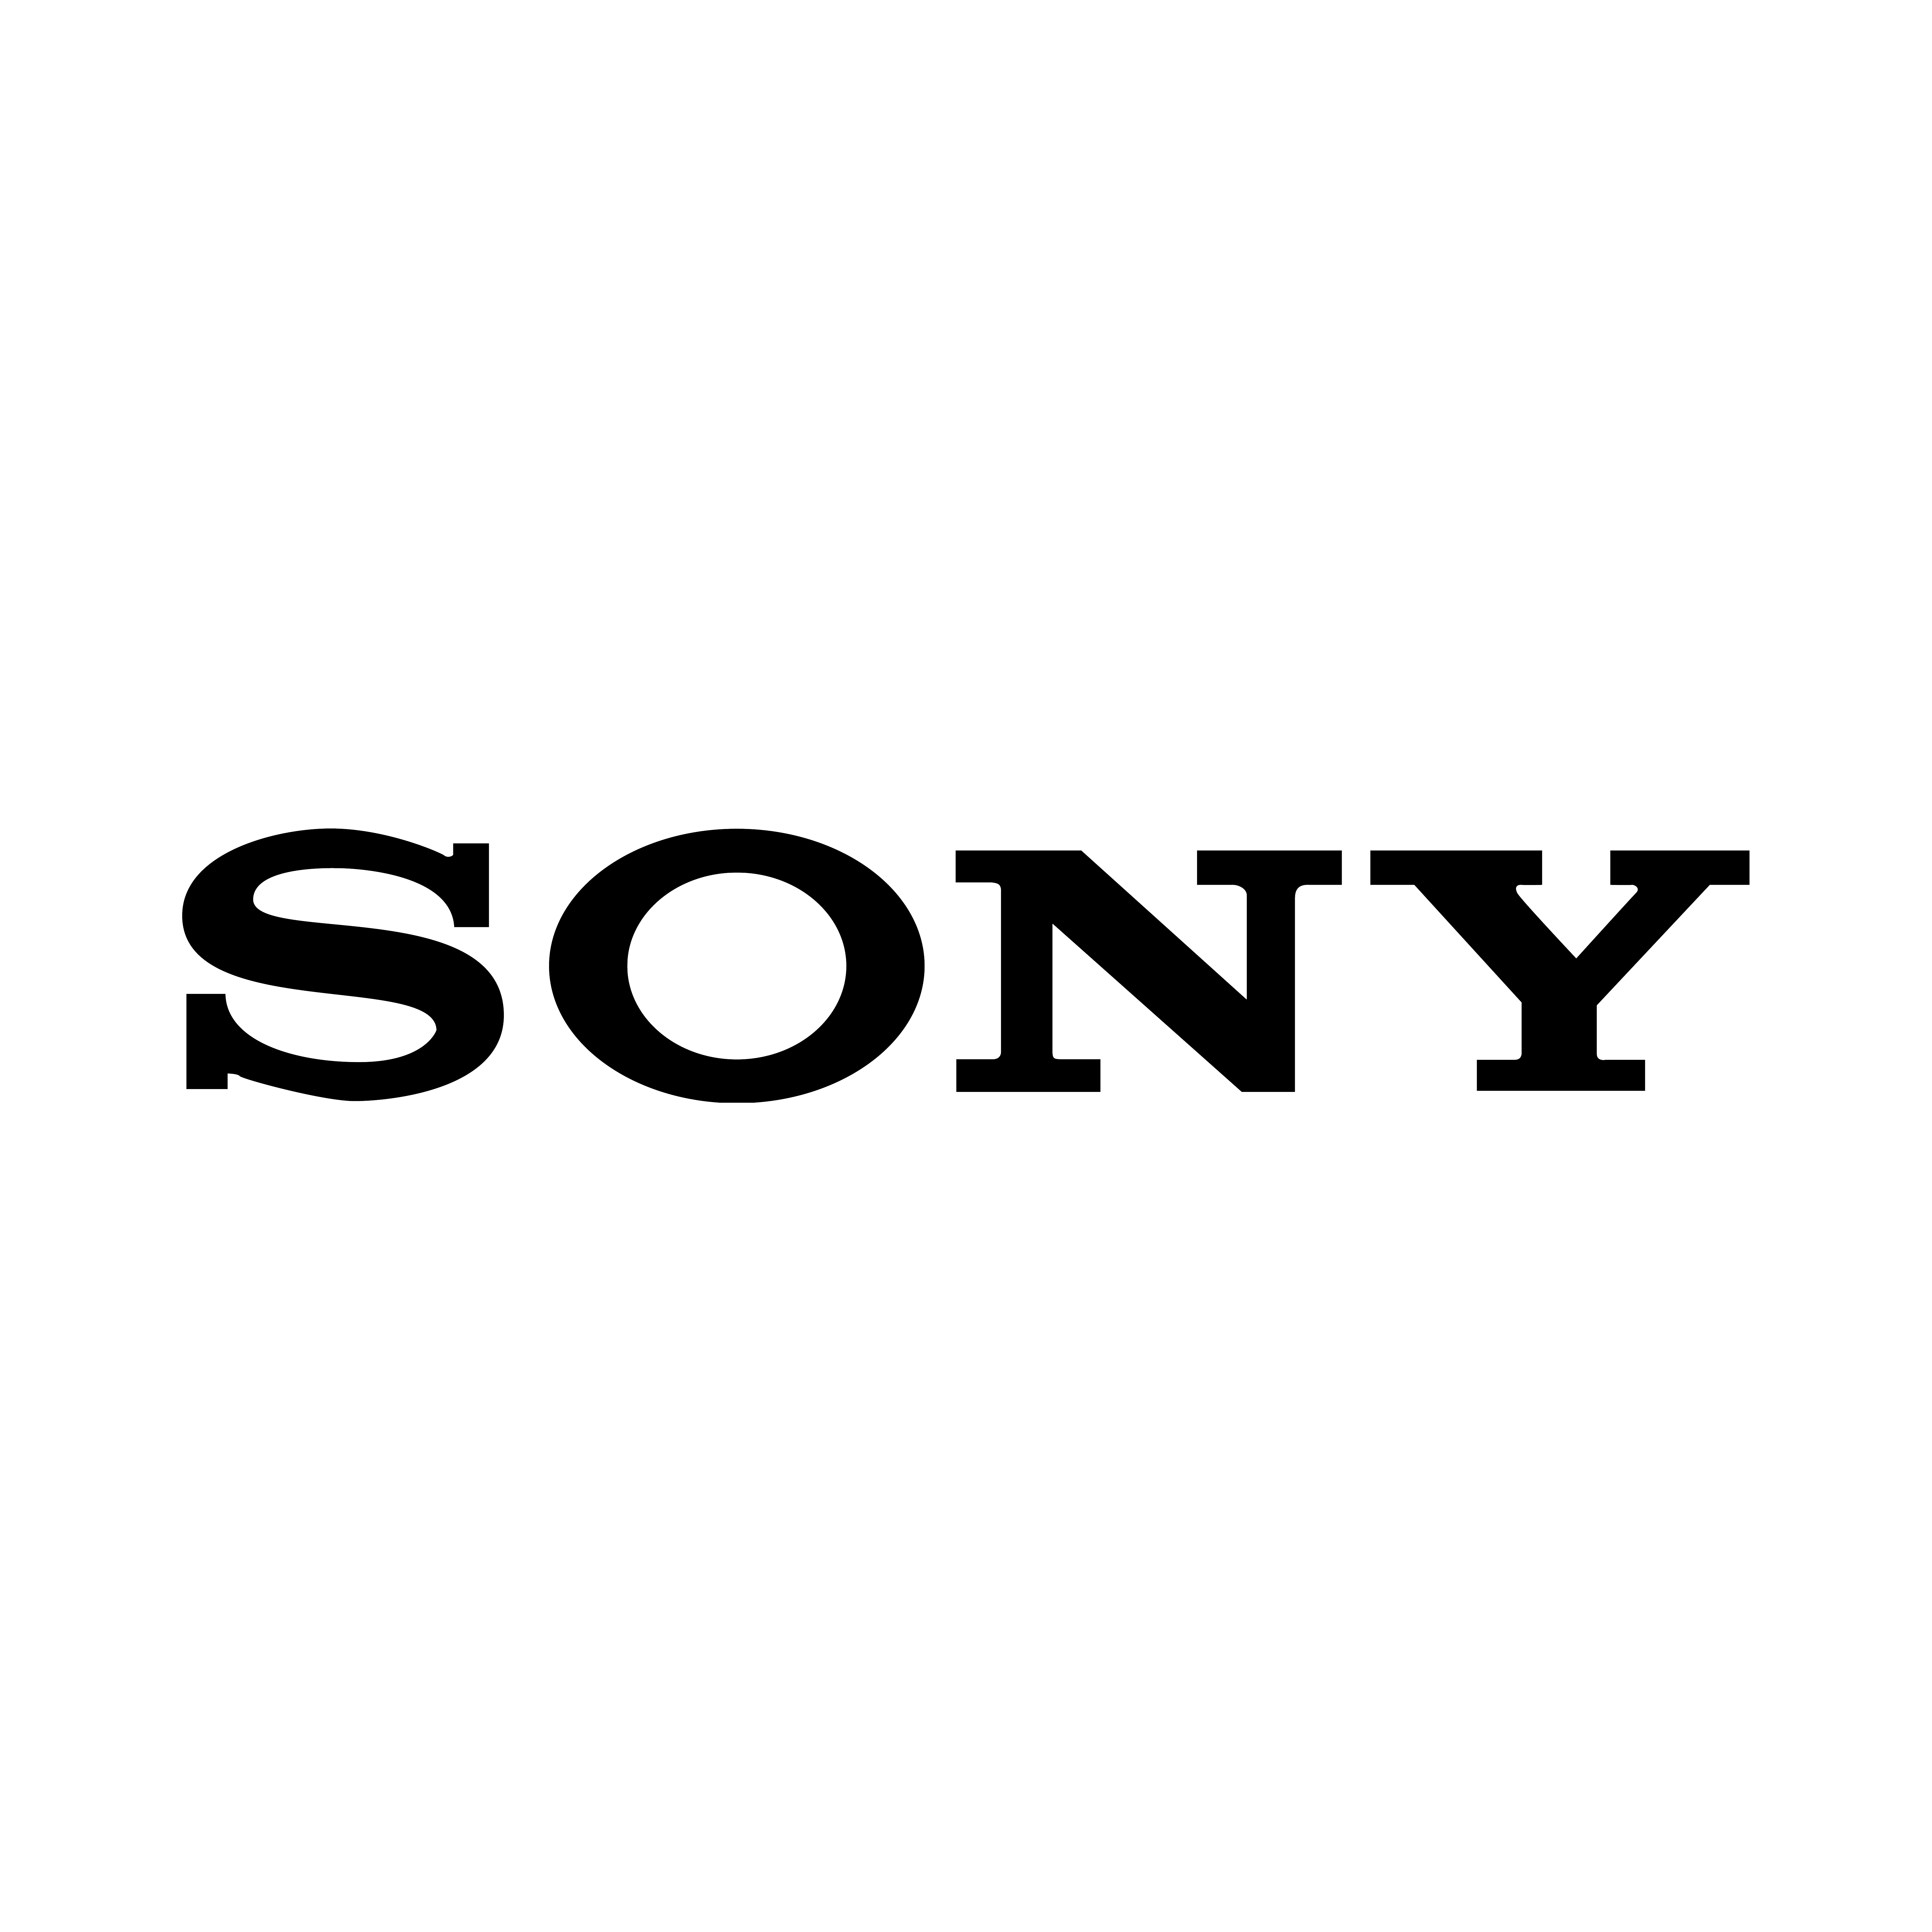 Sony - sprrawdź wszystkie promocje